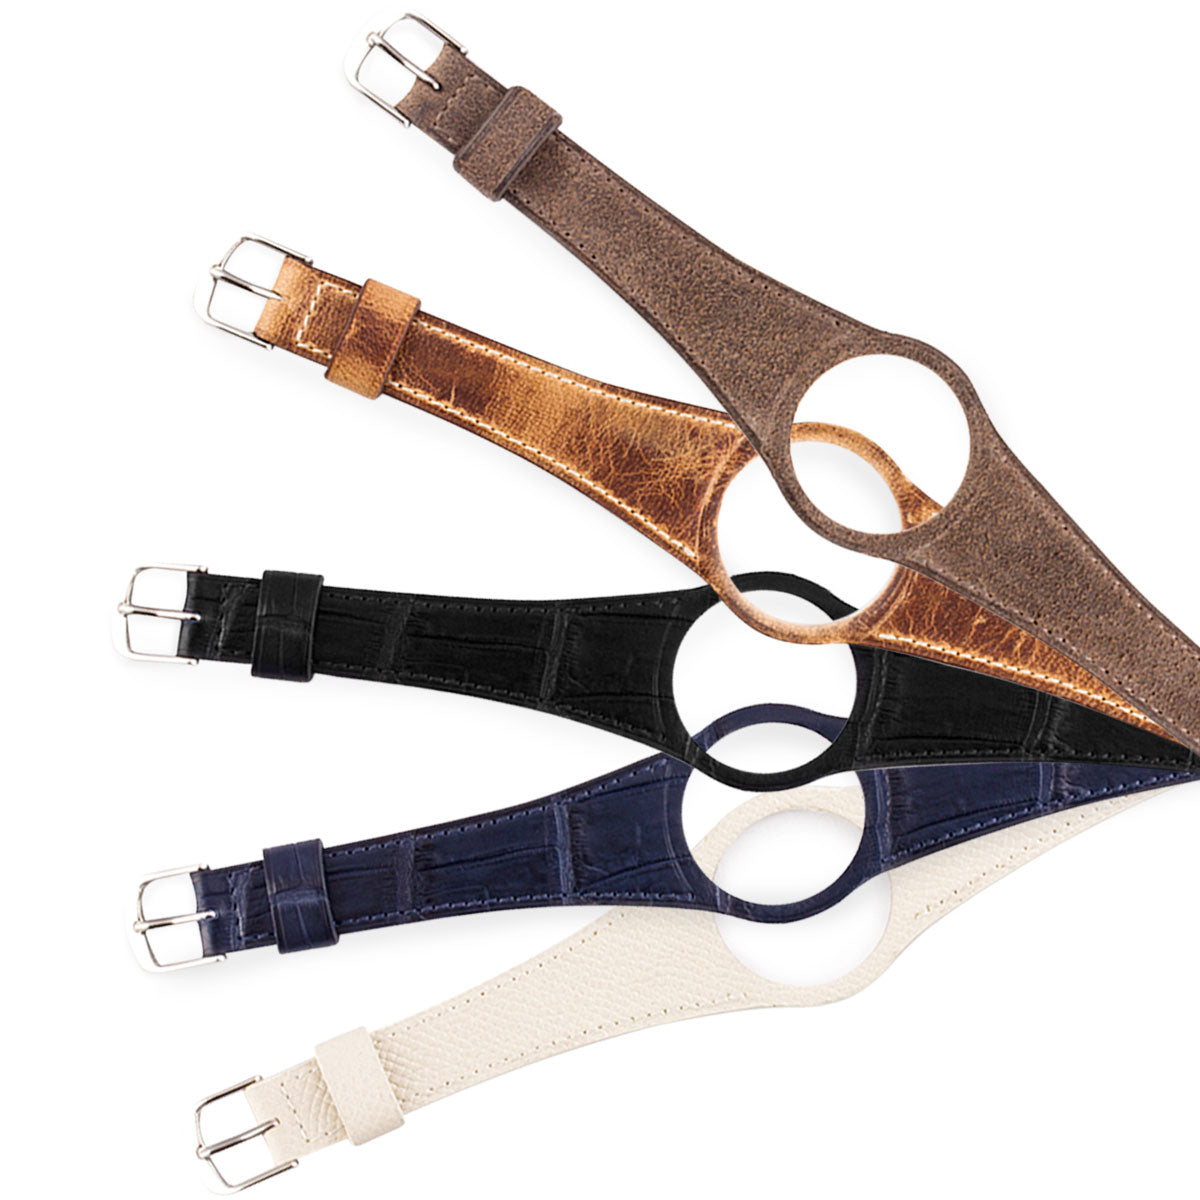 Omega Dynamic - Bracelet-montre cuir (noir, bleu, marron, écru) - watch band leather strap - ABP Concept -